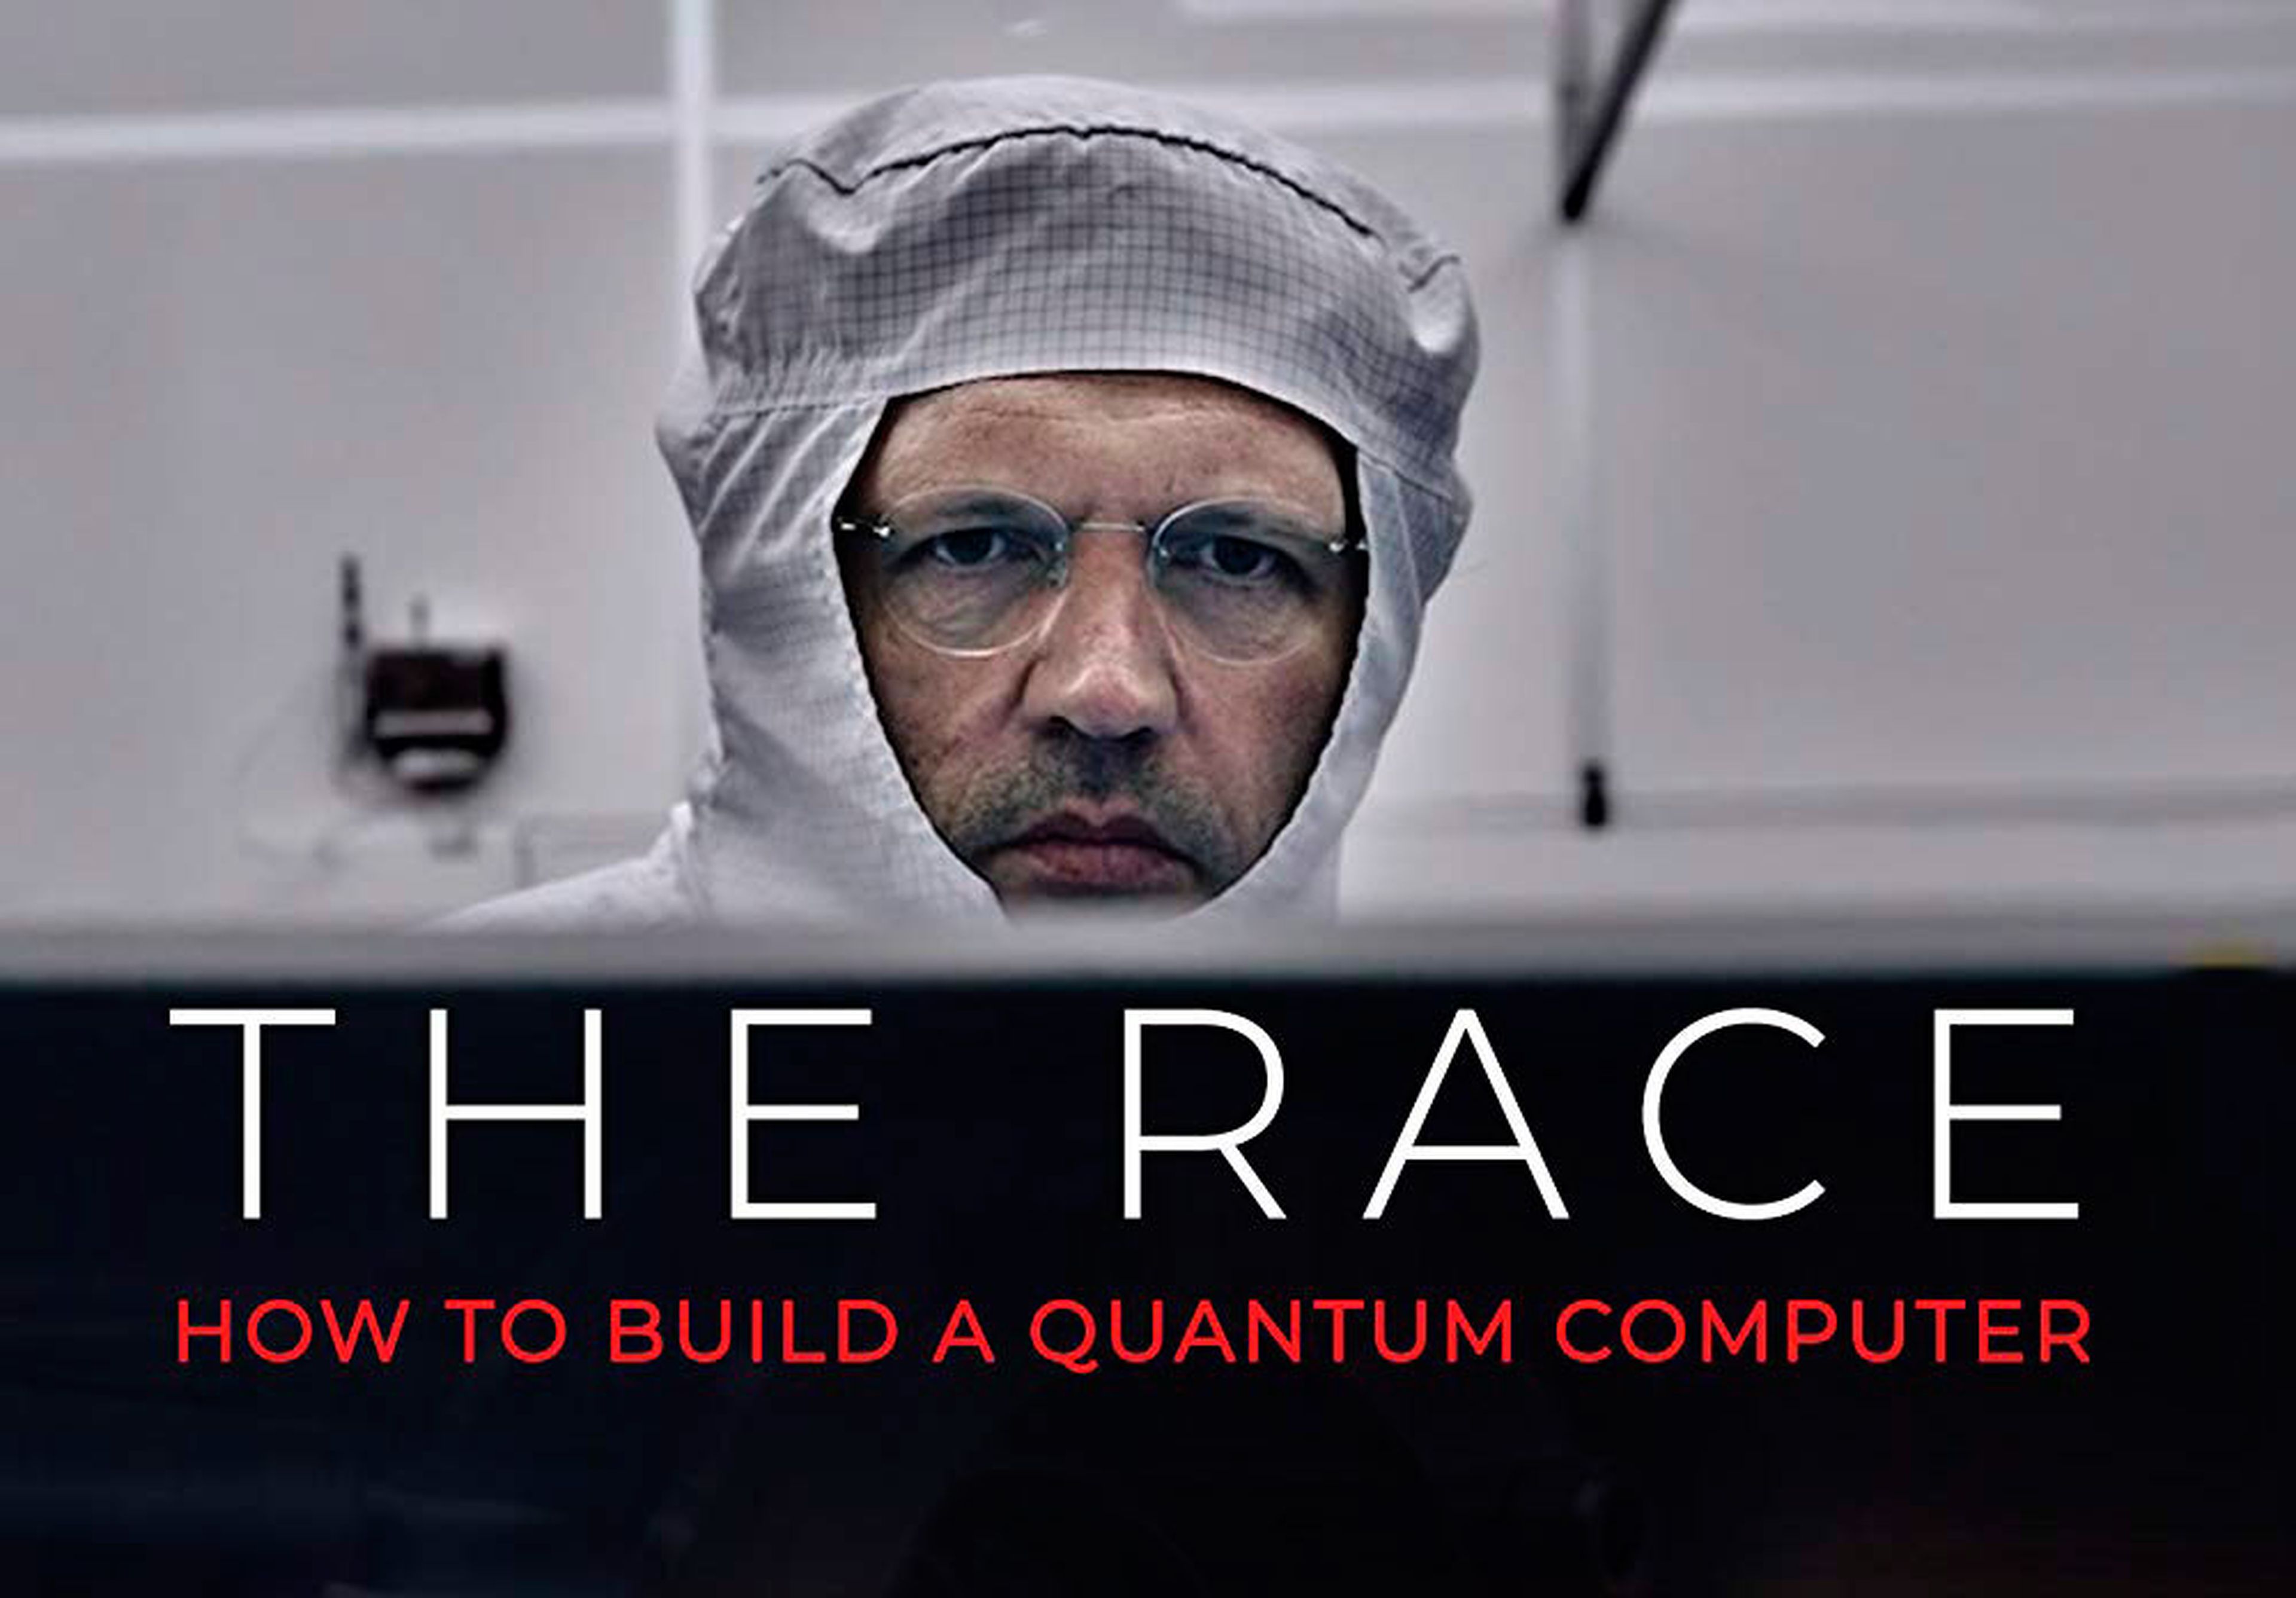 La carrera: cómo construir una computadora cuántica